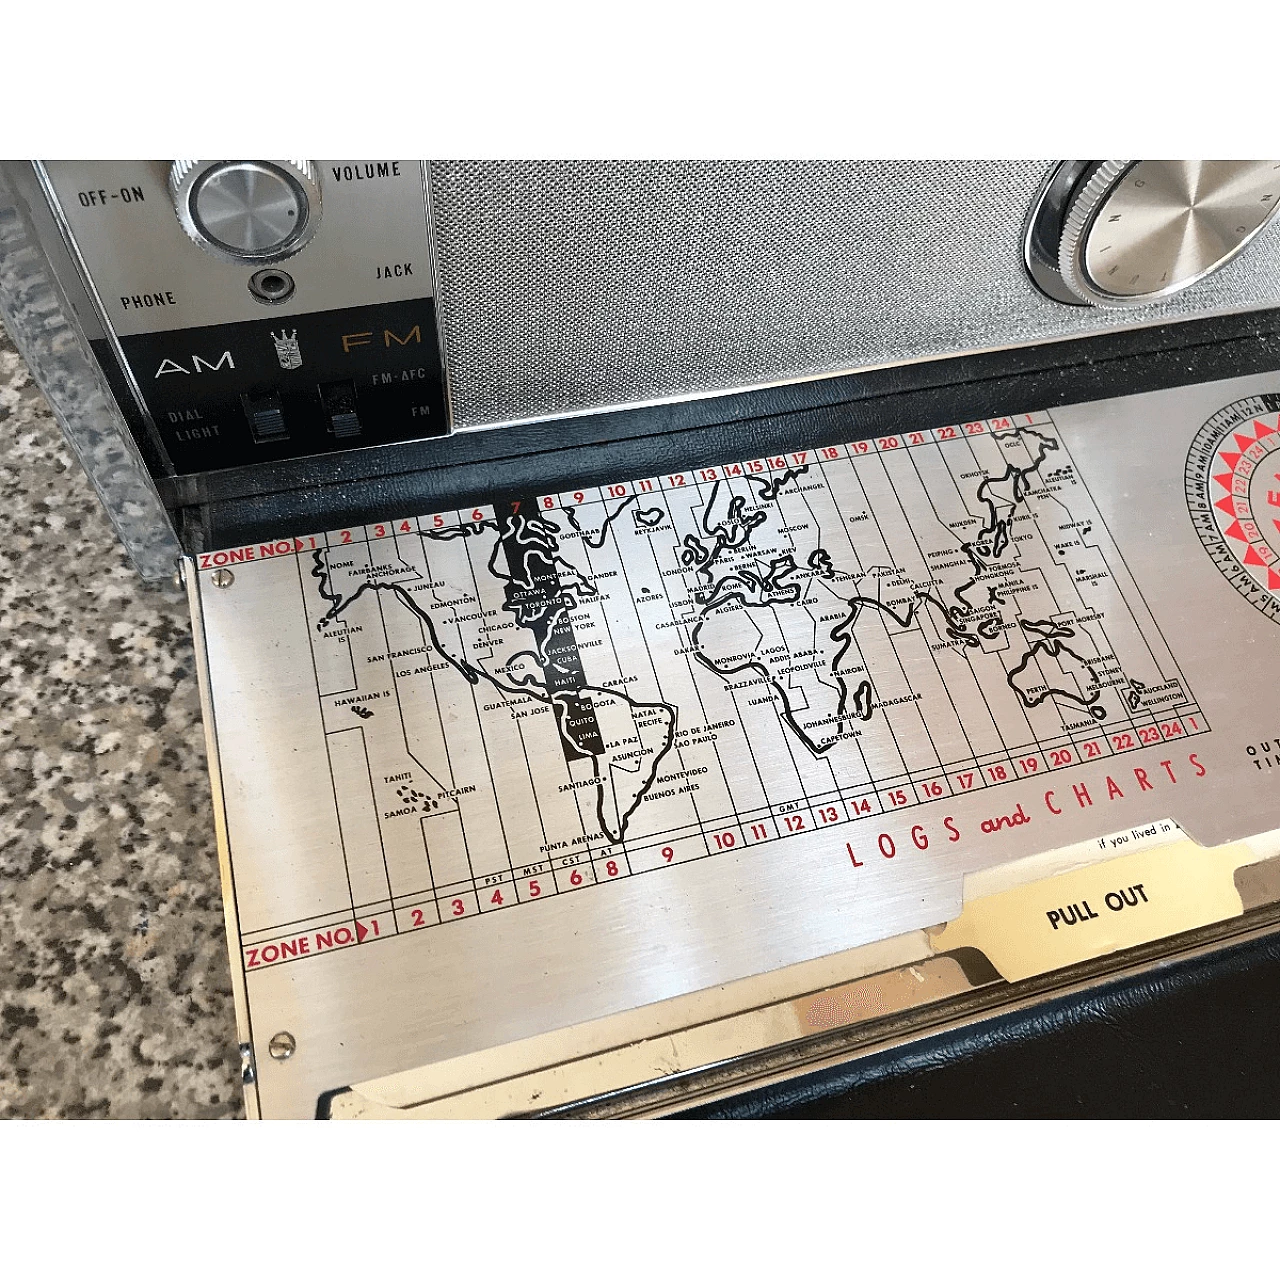 Trasmettitore radio ad onde Zenith di origine americana, anni '40 1061012